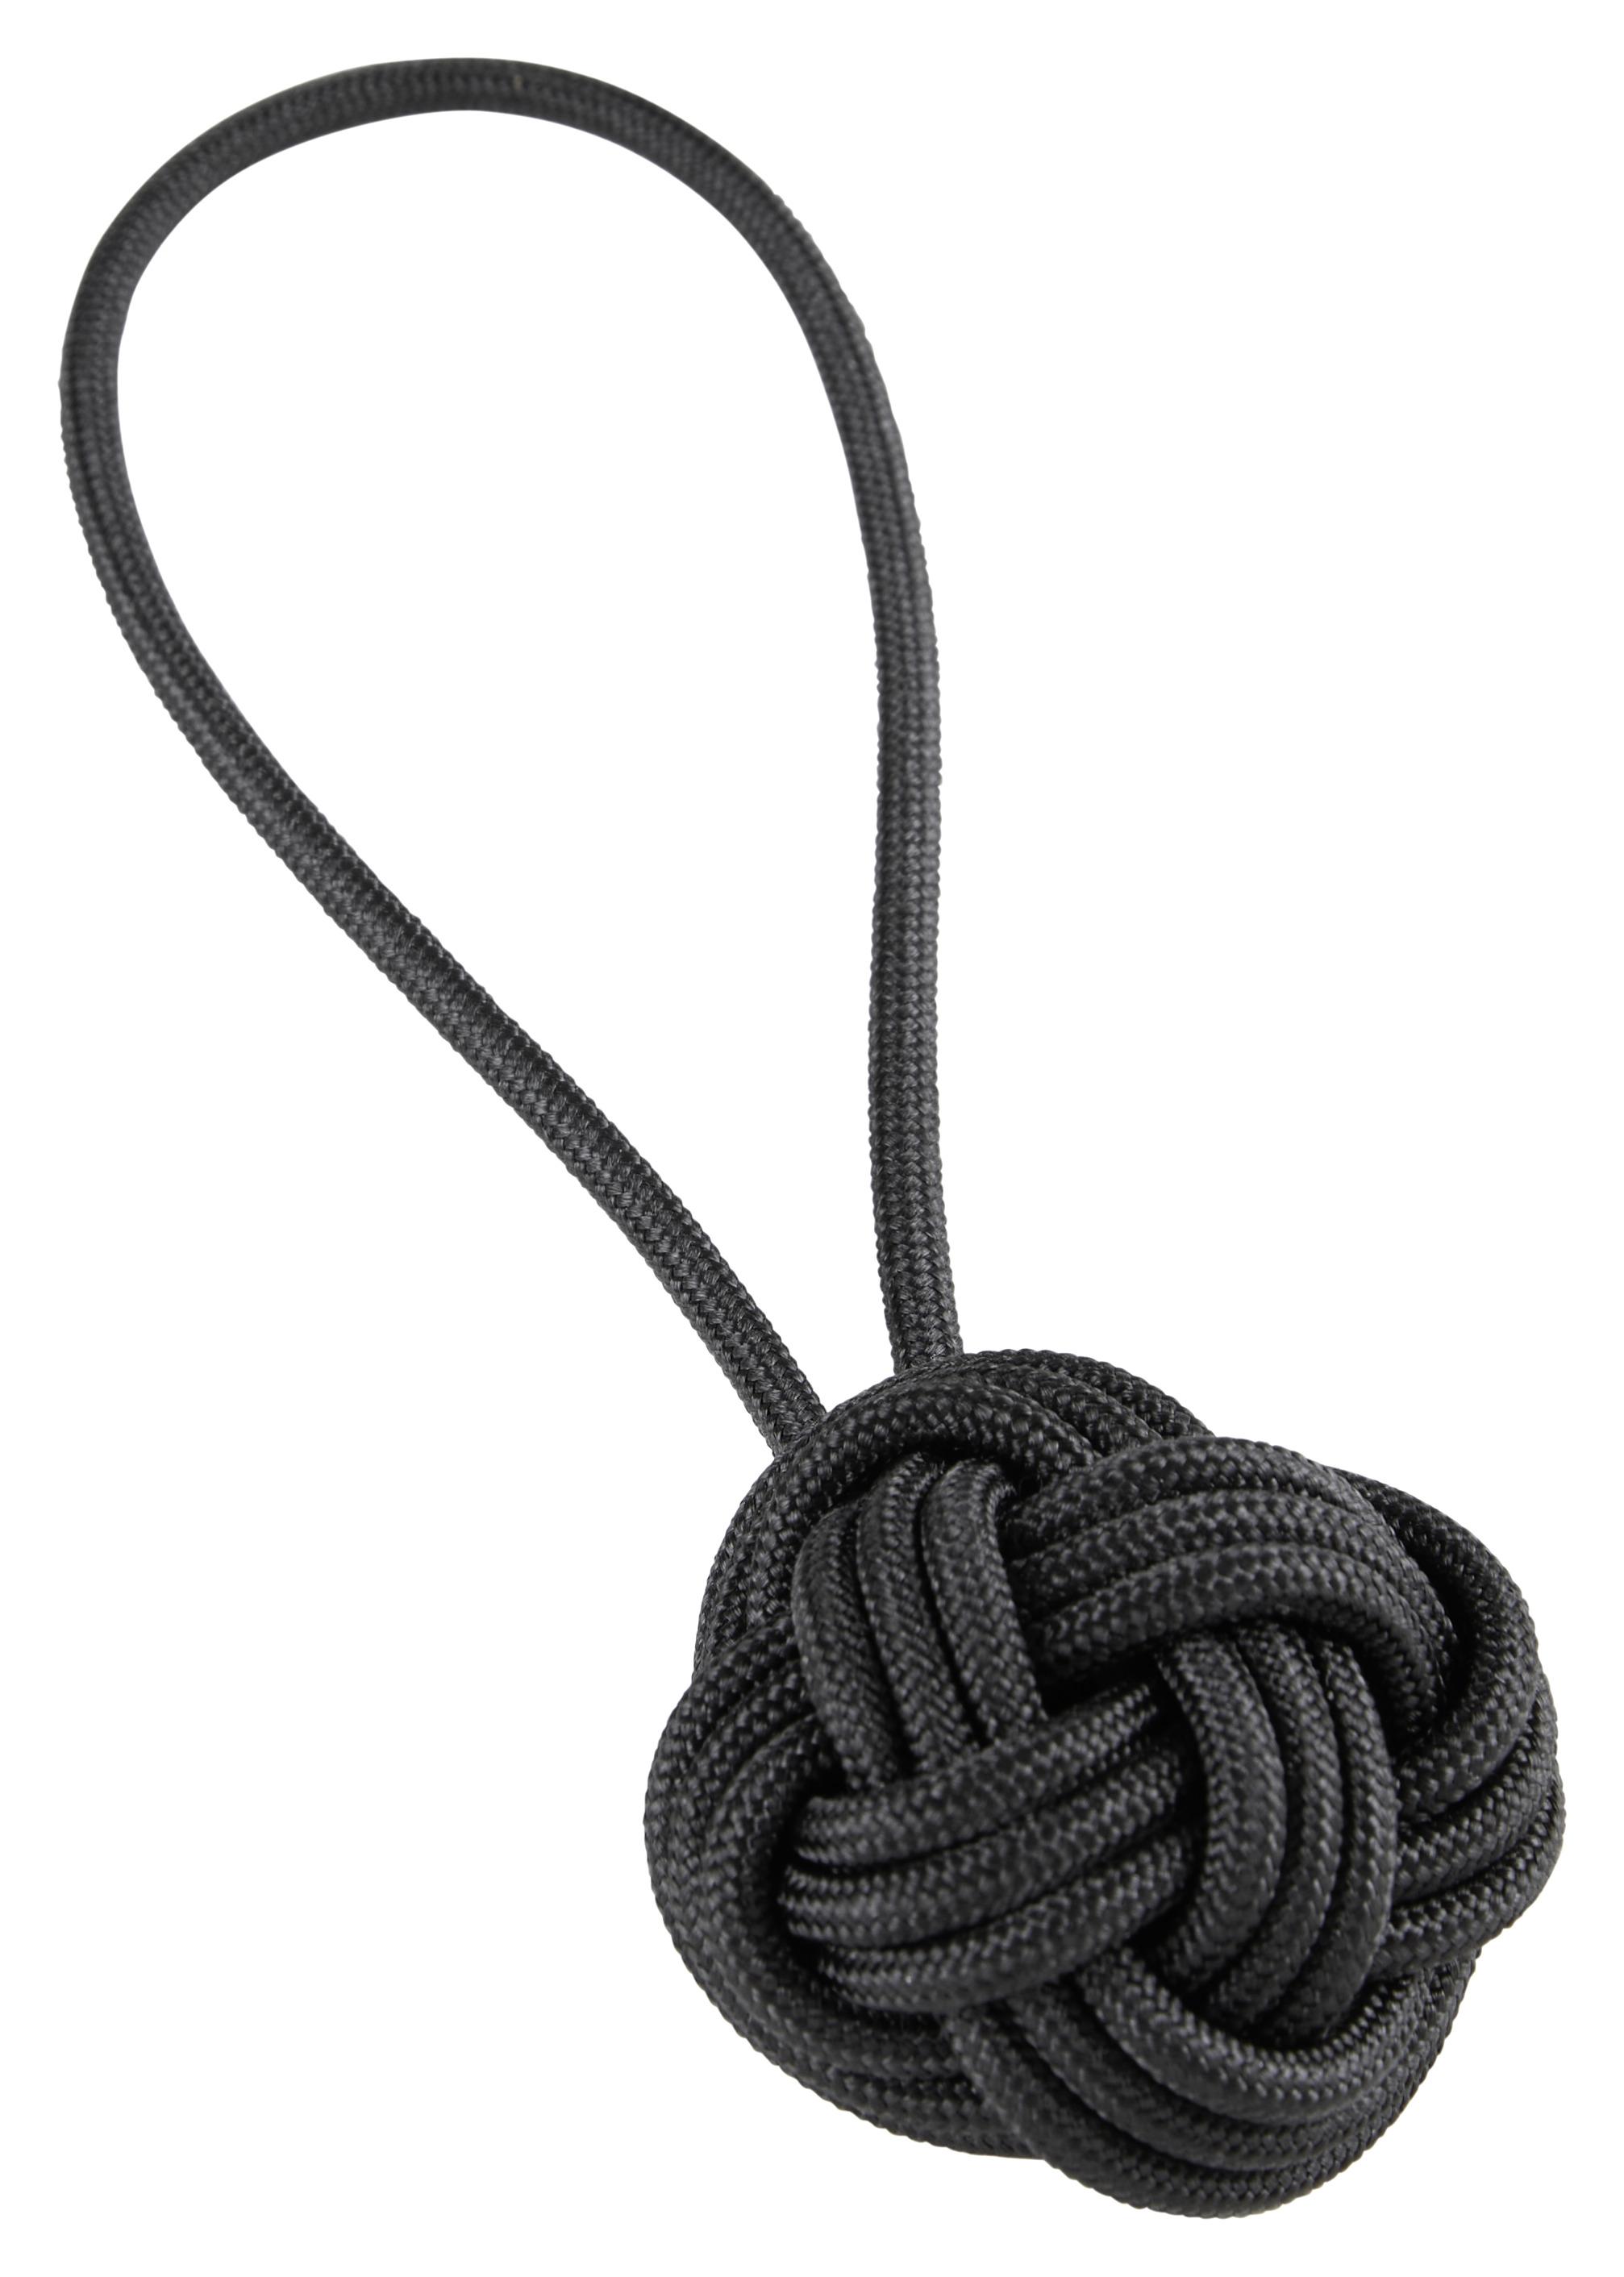 Řasící Spona Uzel - černá, textil (5cm) - Modern Living